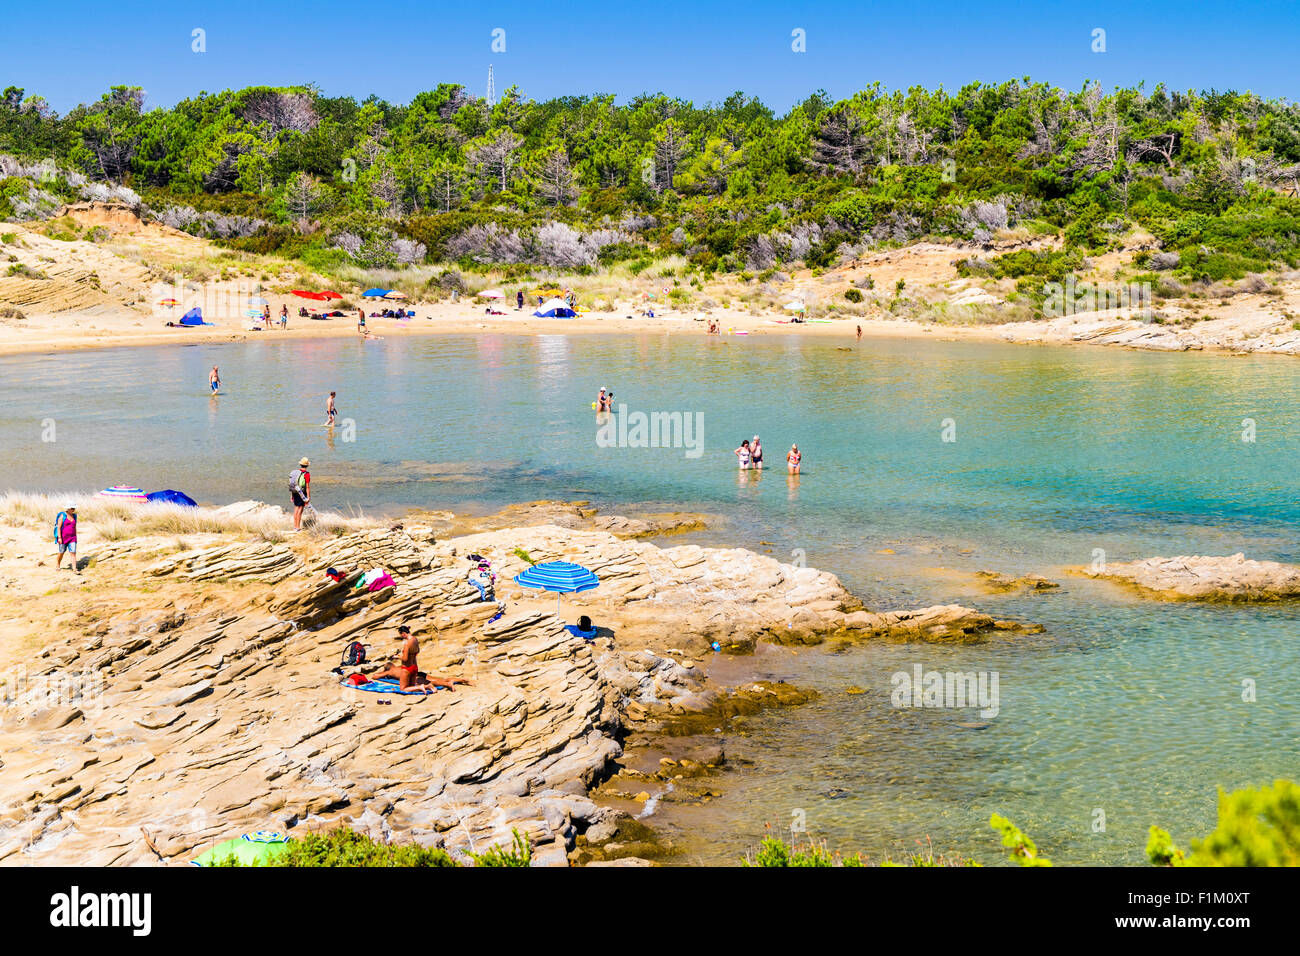 RAB, Kroatien - ca. AUGUST 2015: Die unberührte Küste und kristallklarem Wasser der Insel Rab, Kroatien. Stockfoto